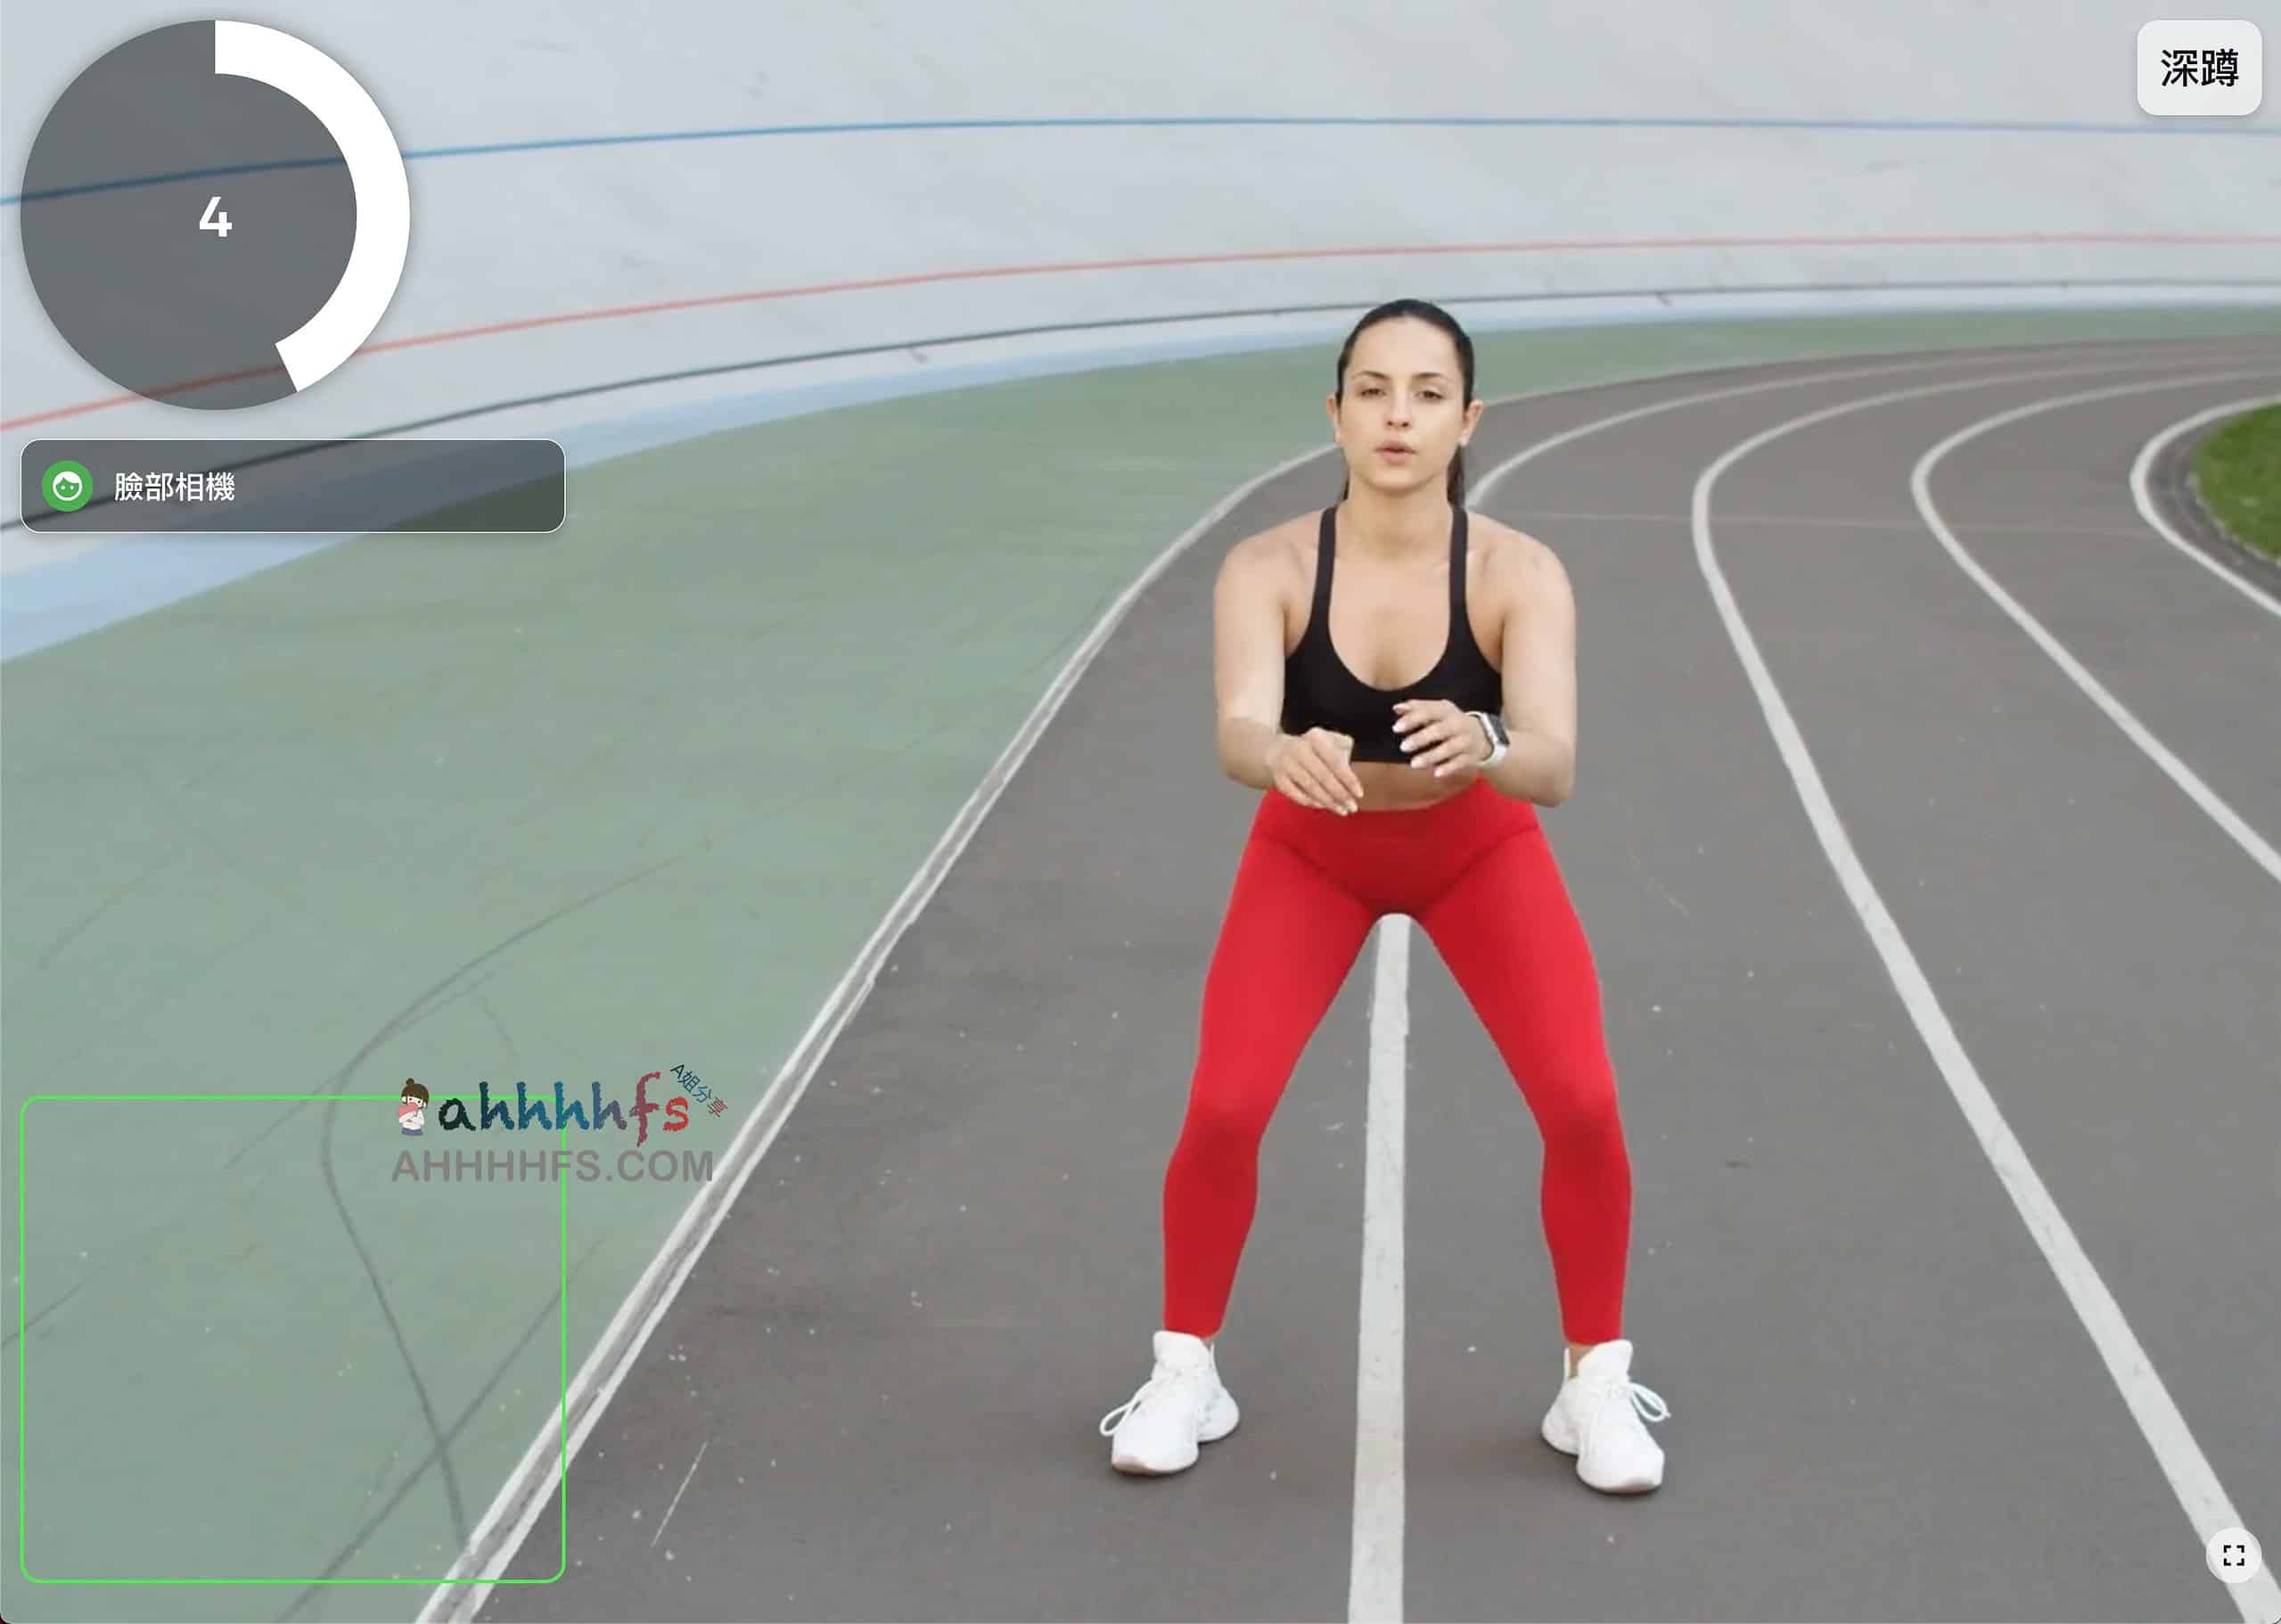 人工智能AI健身工具 摄像头检测运动姿势并打分-Rex fit